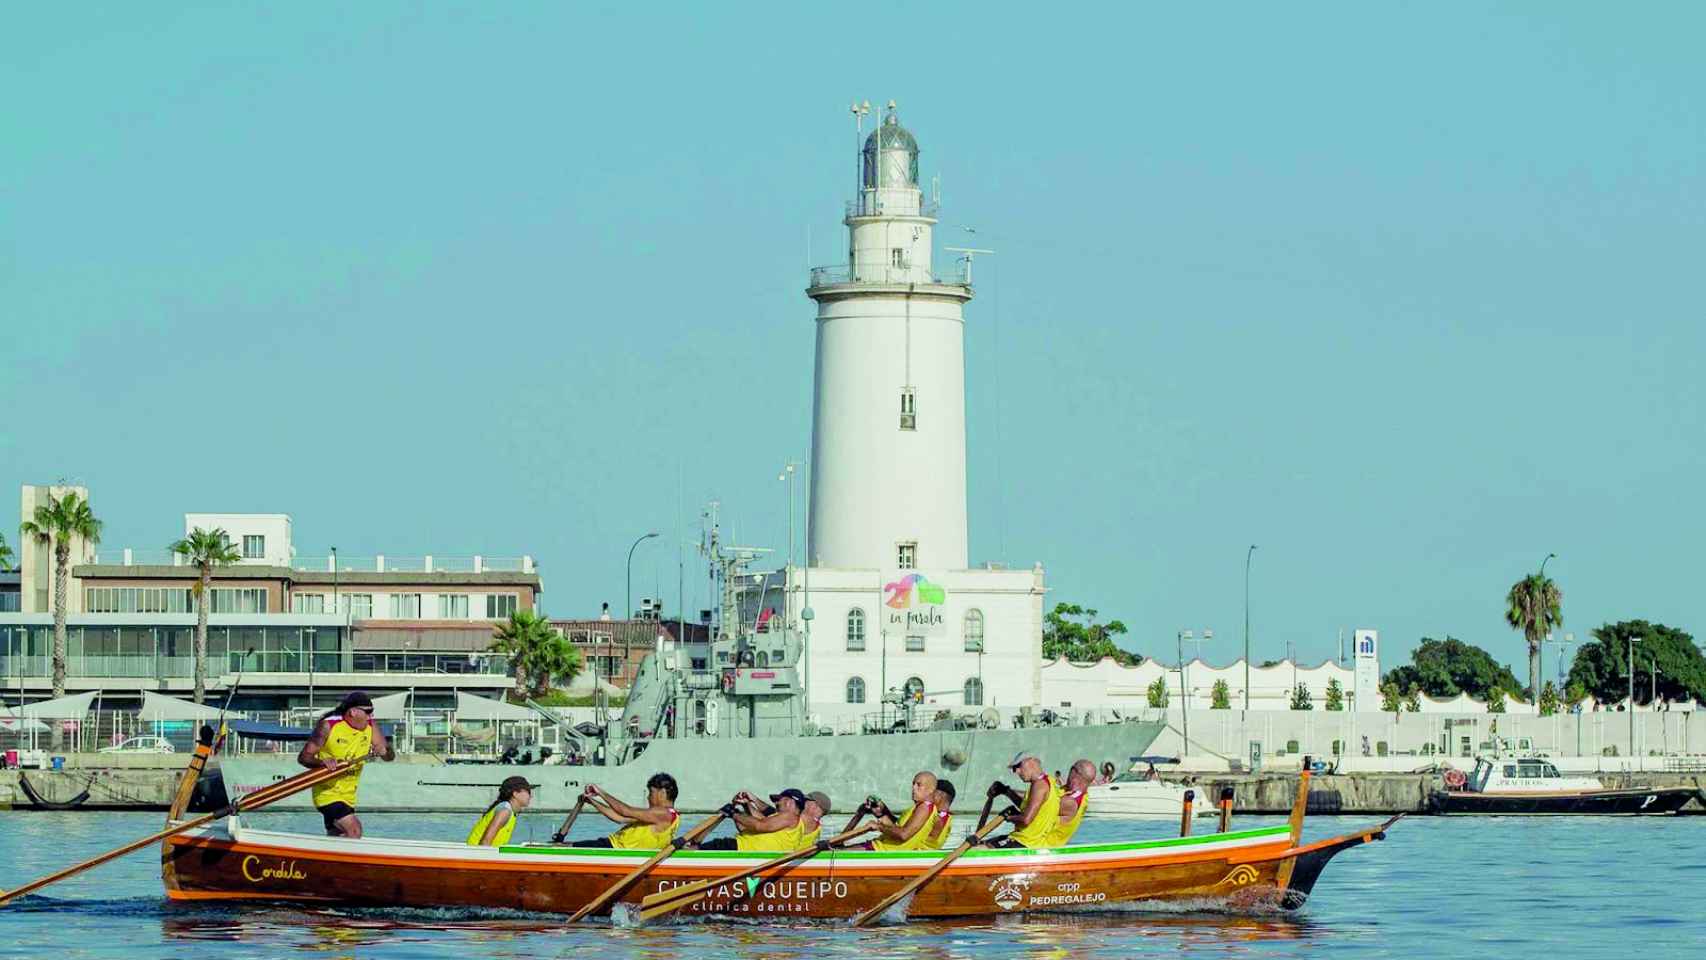 La Farola lleva vigilando el puerto malagueño desde hace más de 200 años.